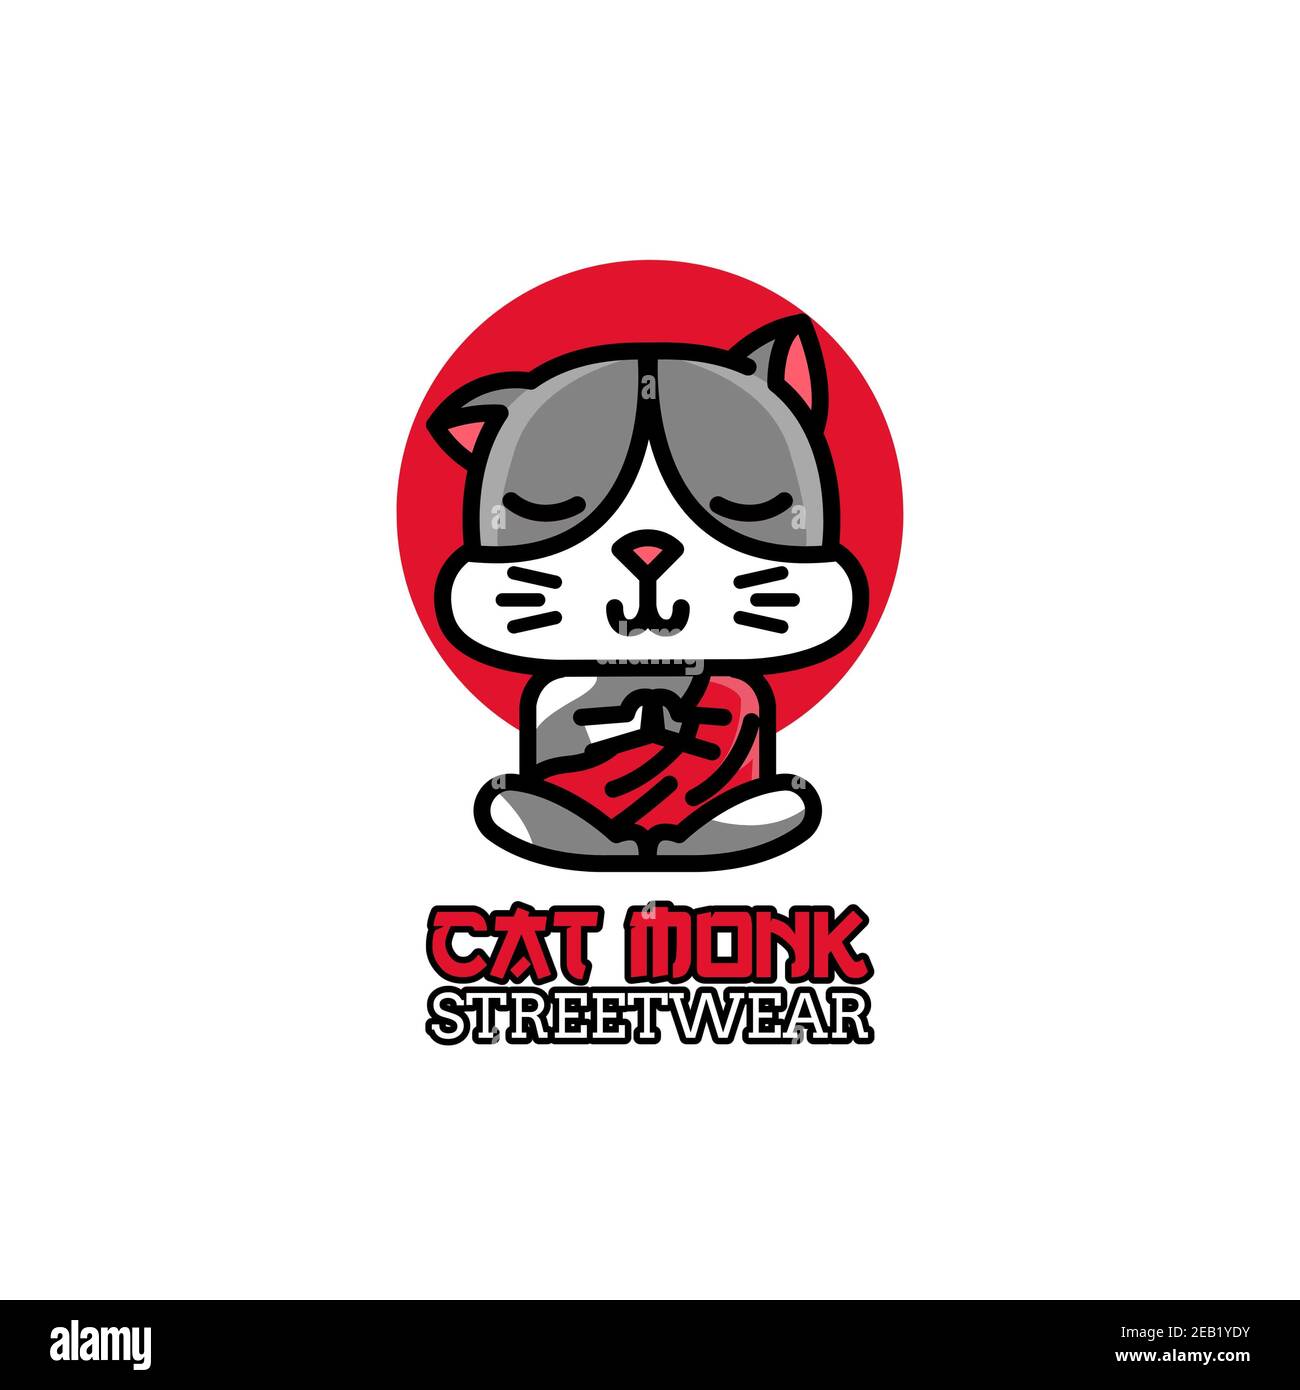 Illustriertes Streetwear-Logo mit EINER Katze, die meditiert Stockfoto